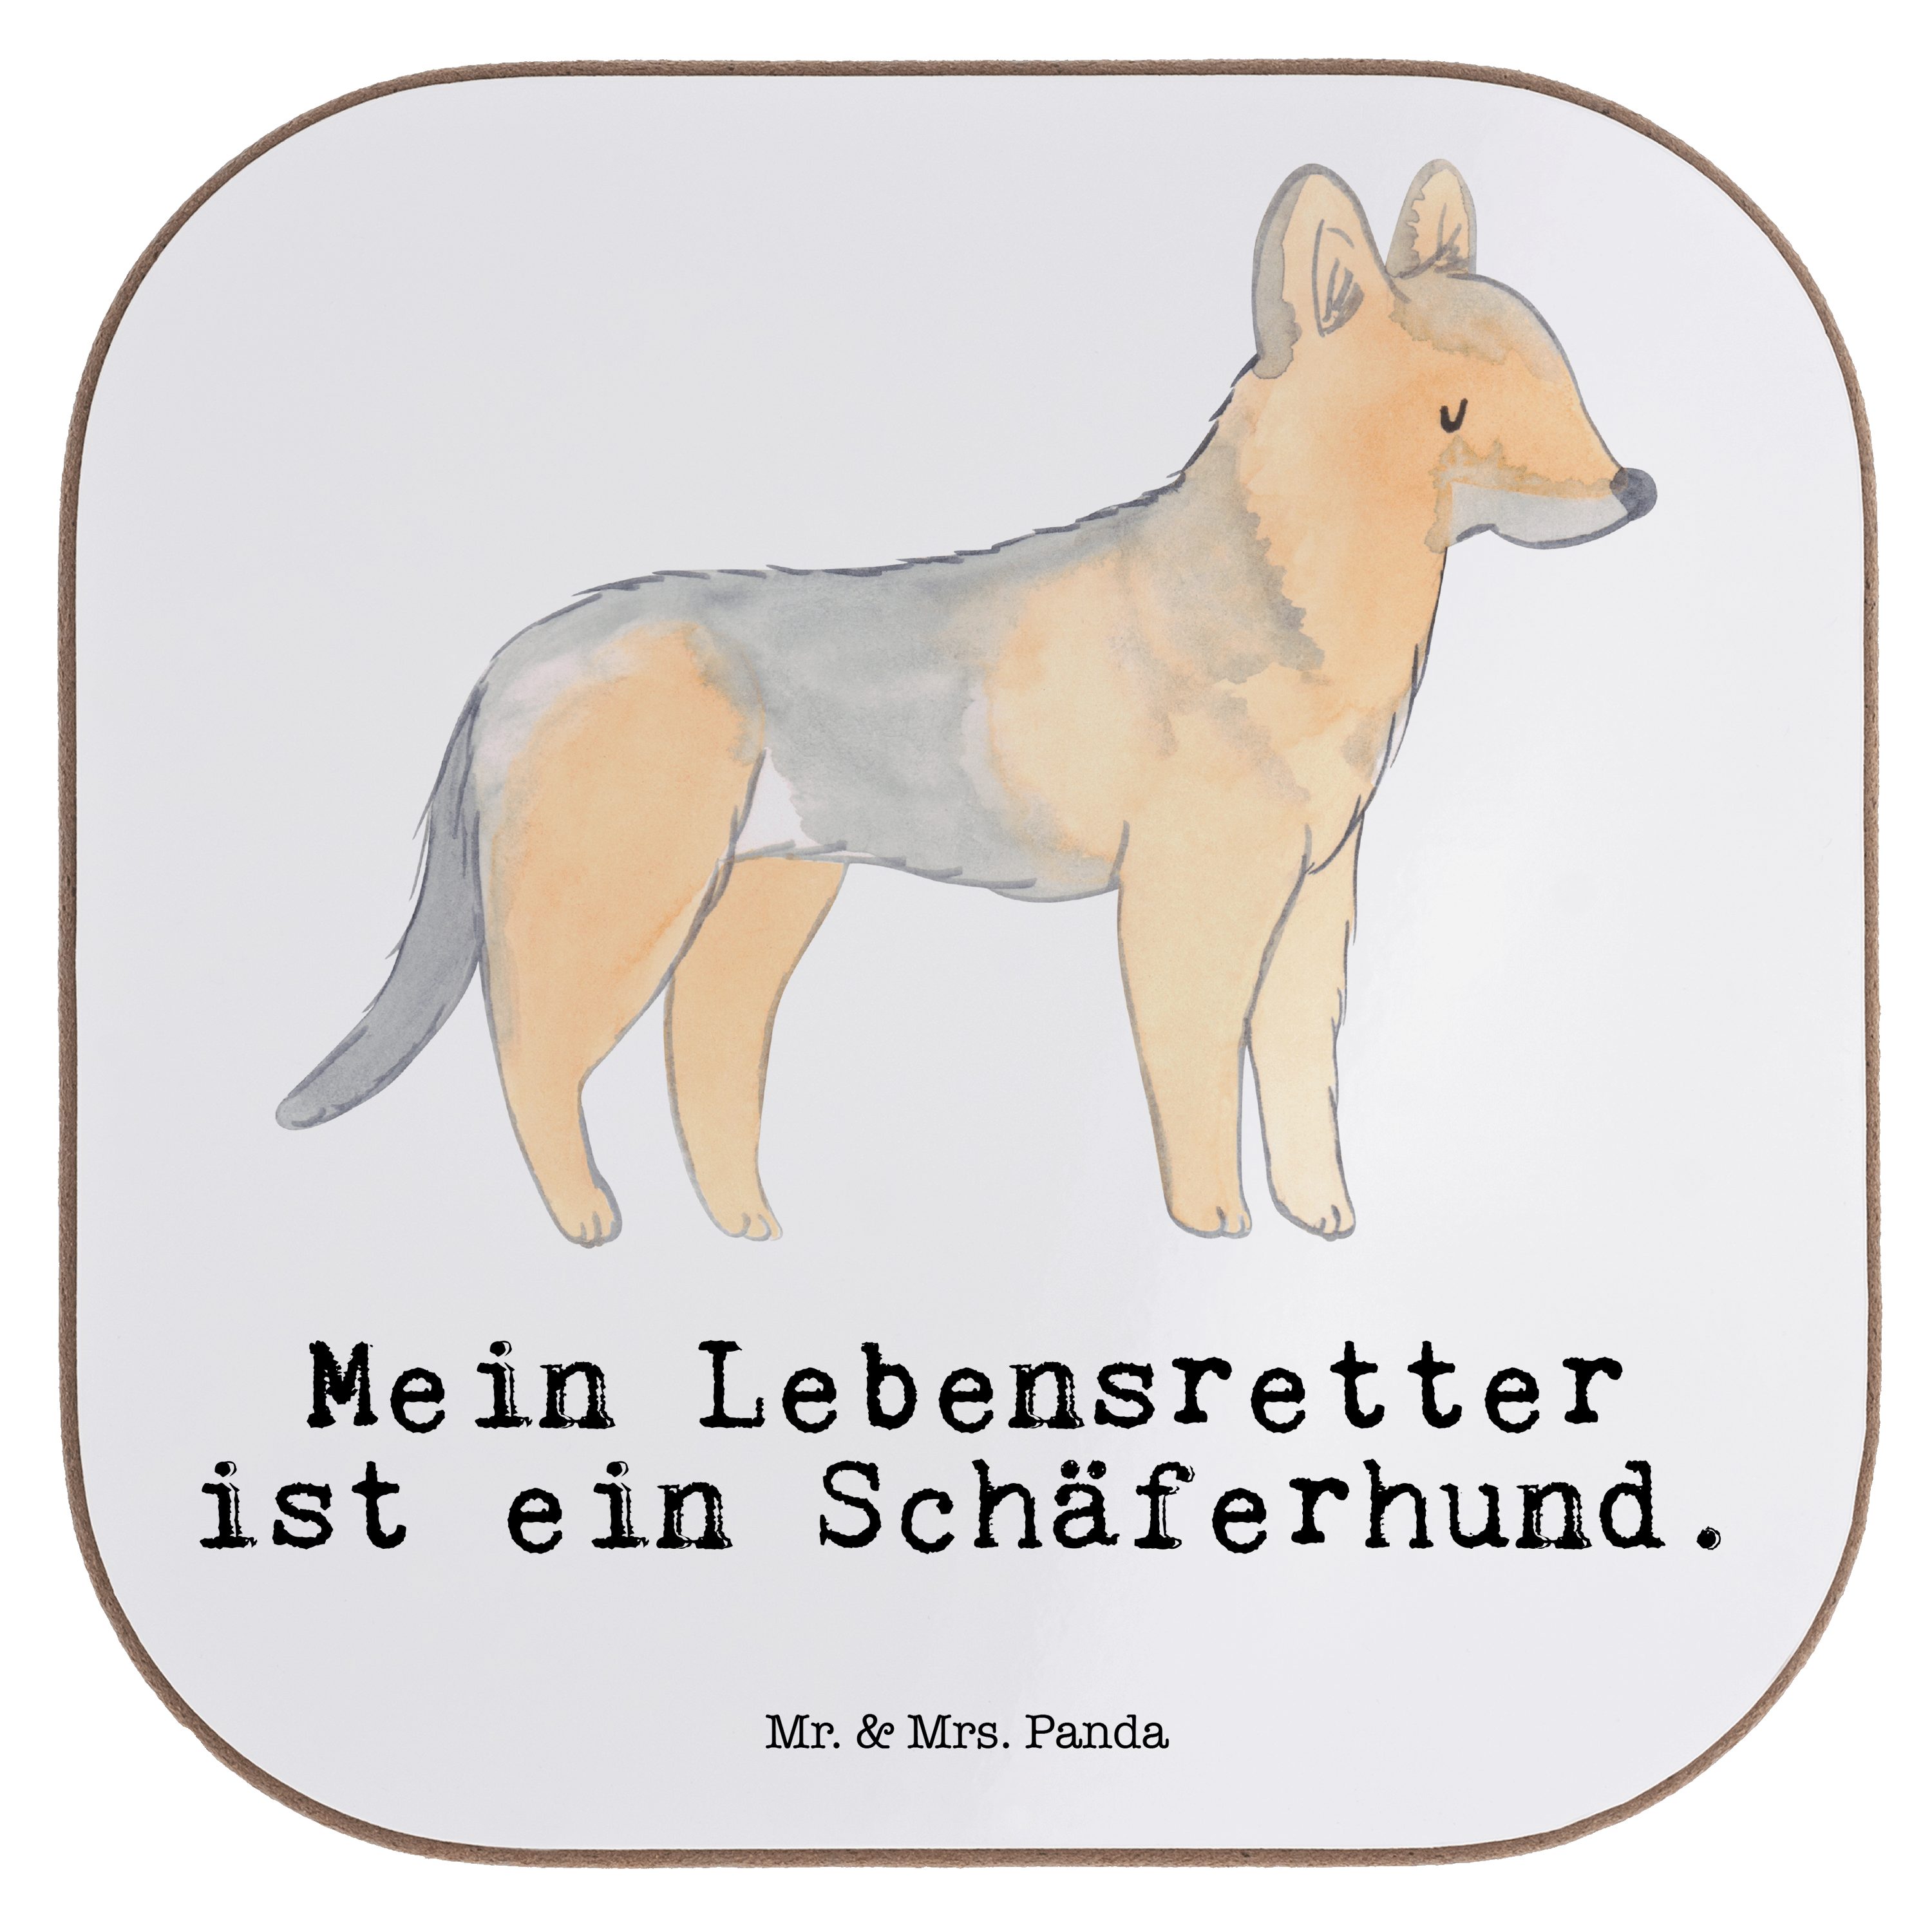 Mr. & Mrs. Panda Getränkeuntersetzer Schäferhund Lebensretter - Weiß - Geschenk, Untersetzer Gläser, Tierf, 1-tlg.